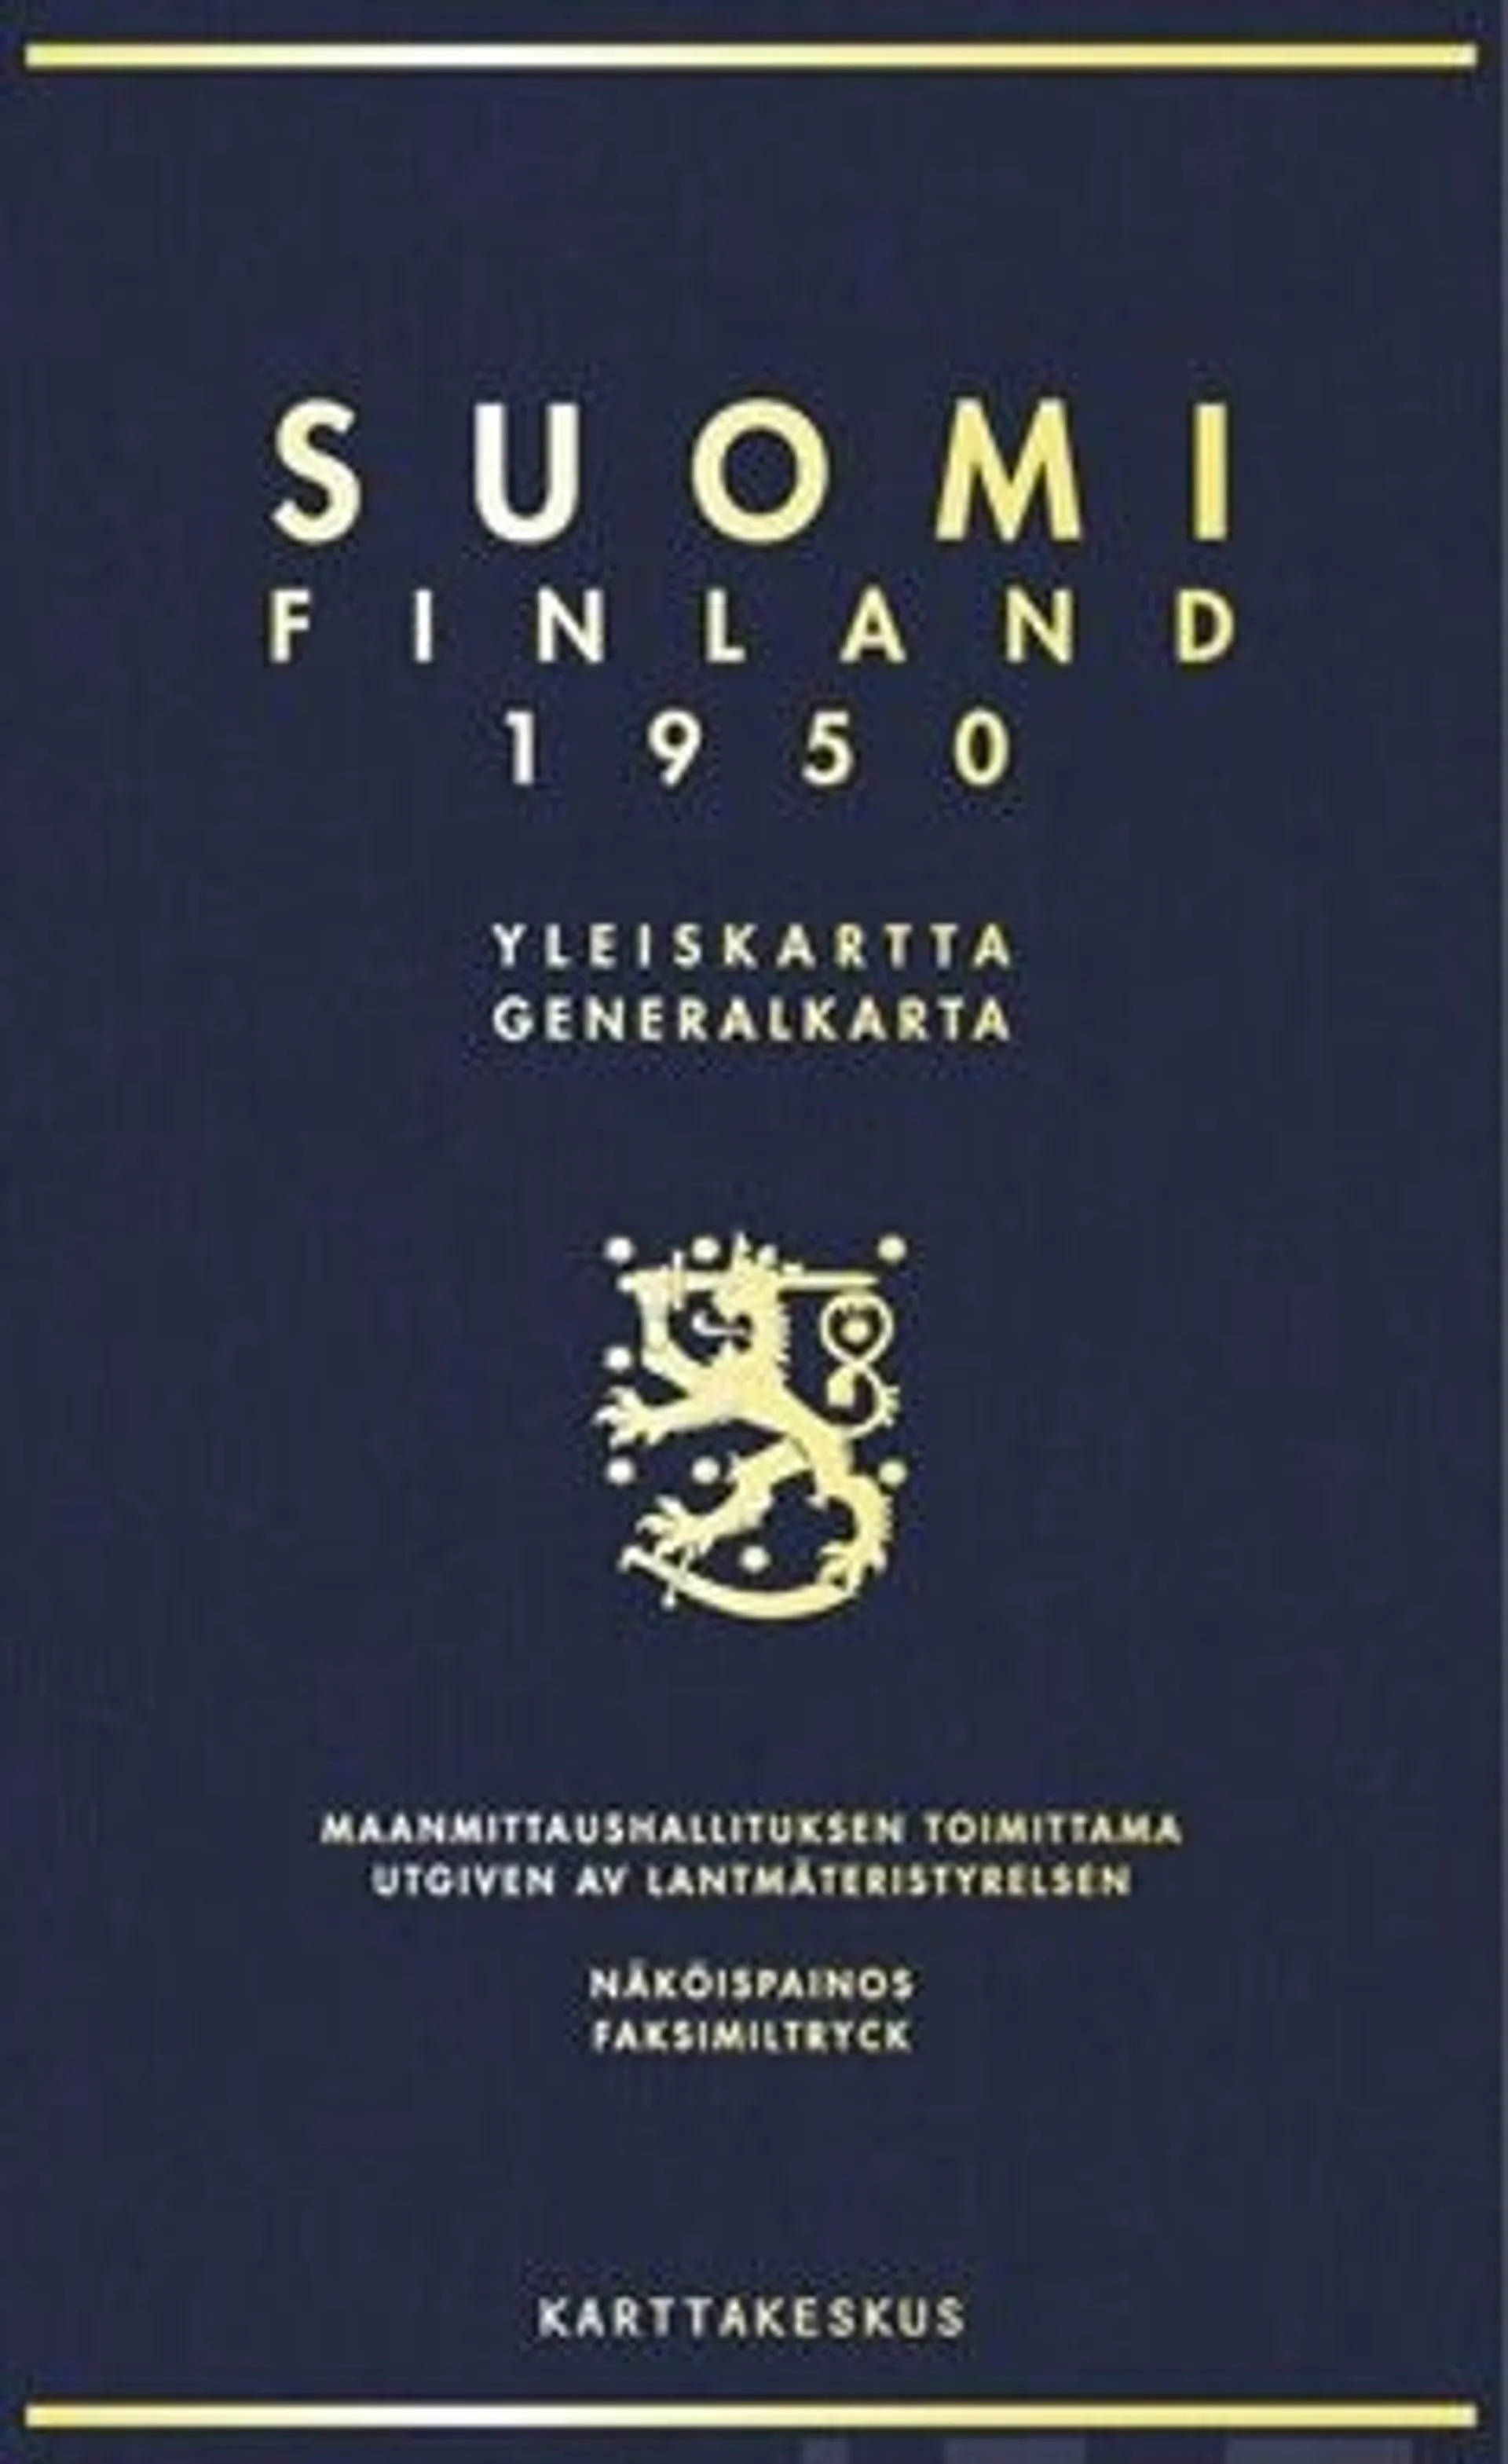 Suomi Finland 1950 (näköispainos)